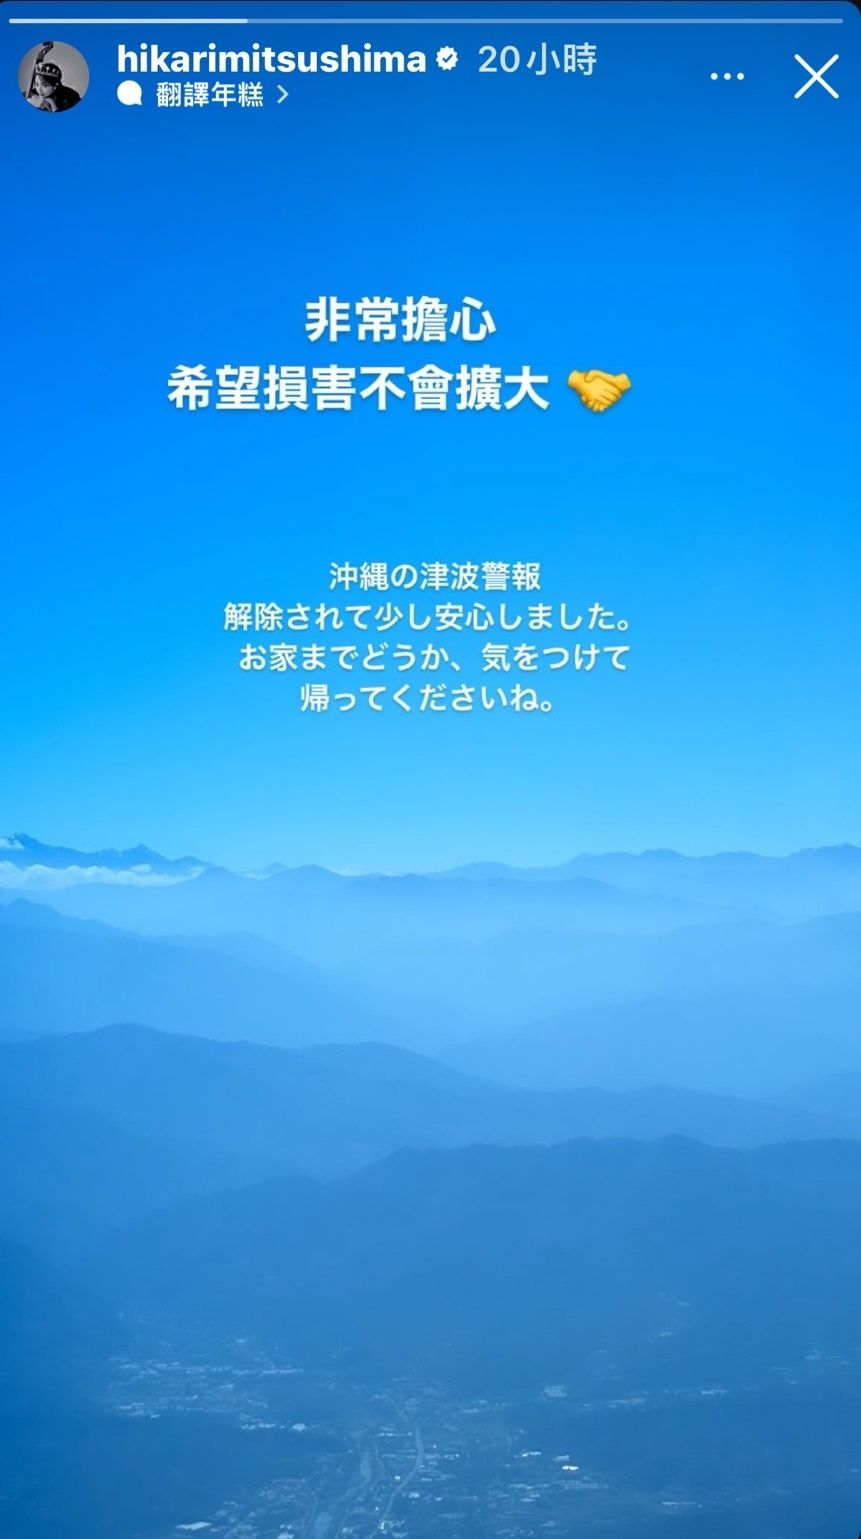 台灣地震,403地震,日本祈福